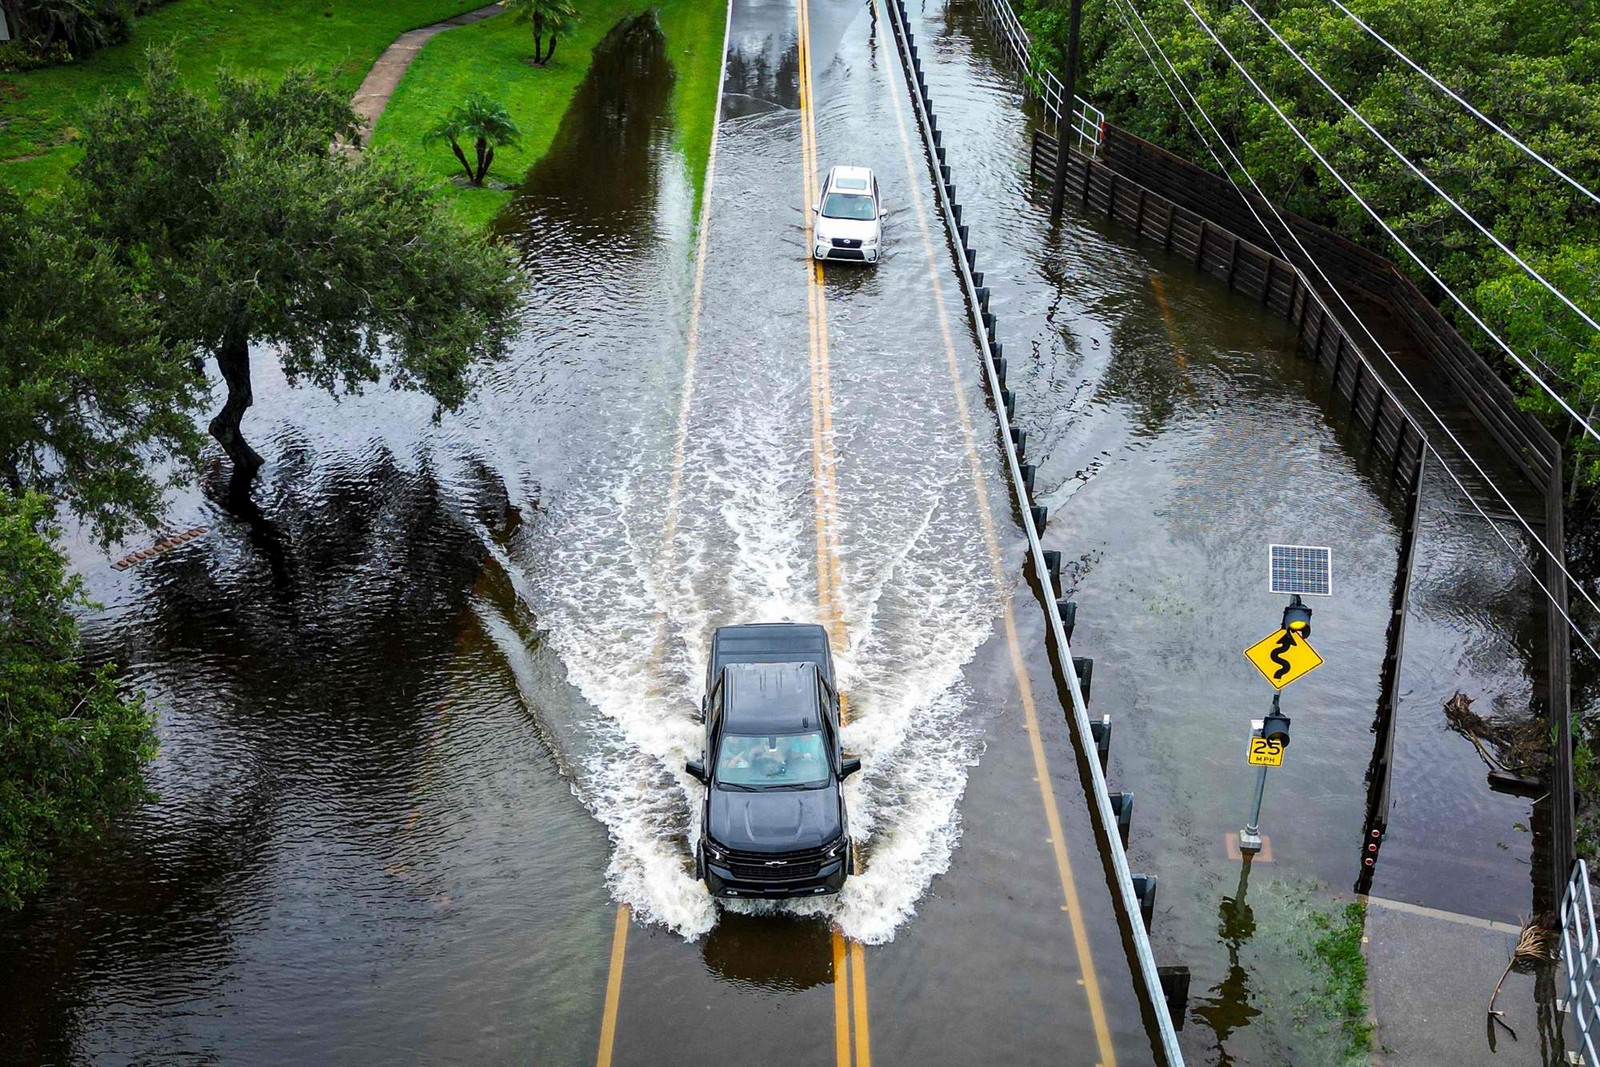 Veículos tentam viajar em uma estrada inundada em Tampa, Flórida, EUA — Foto: Miguel J. Rodríguez Carrillo/AFP